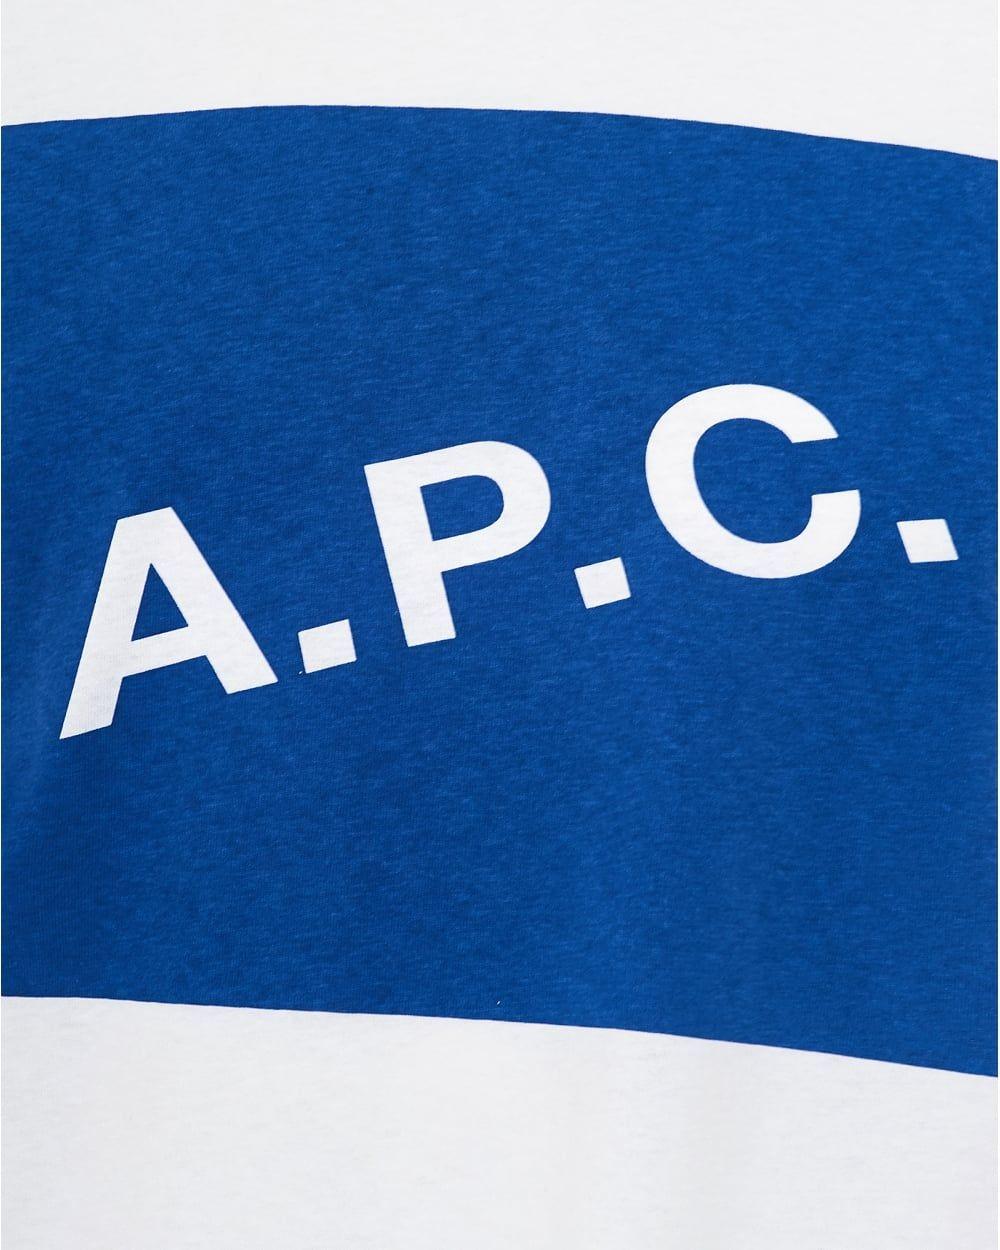 Box in Blue P Logo - A.P.C. Mens Kraft T-Shirt, A.P.C. Box Logo White Tee